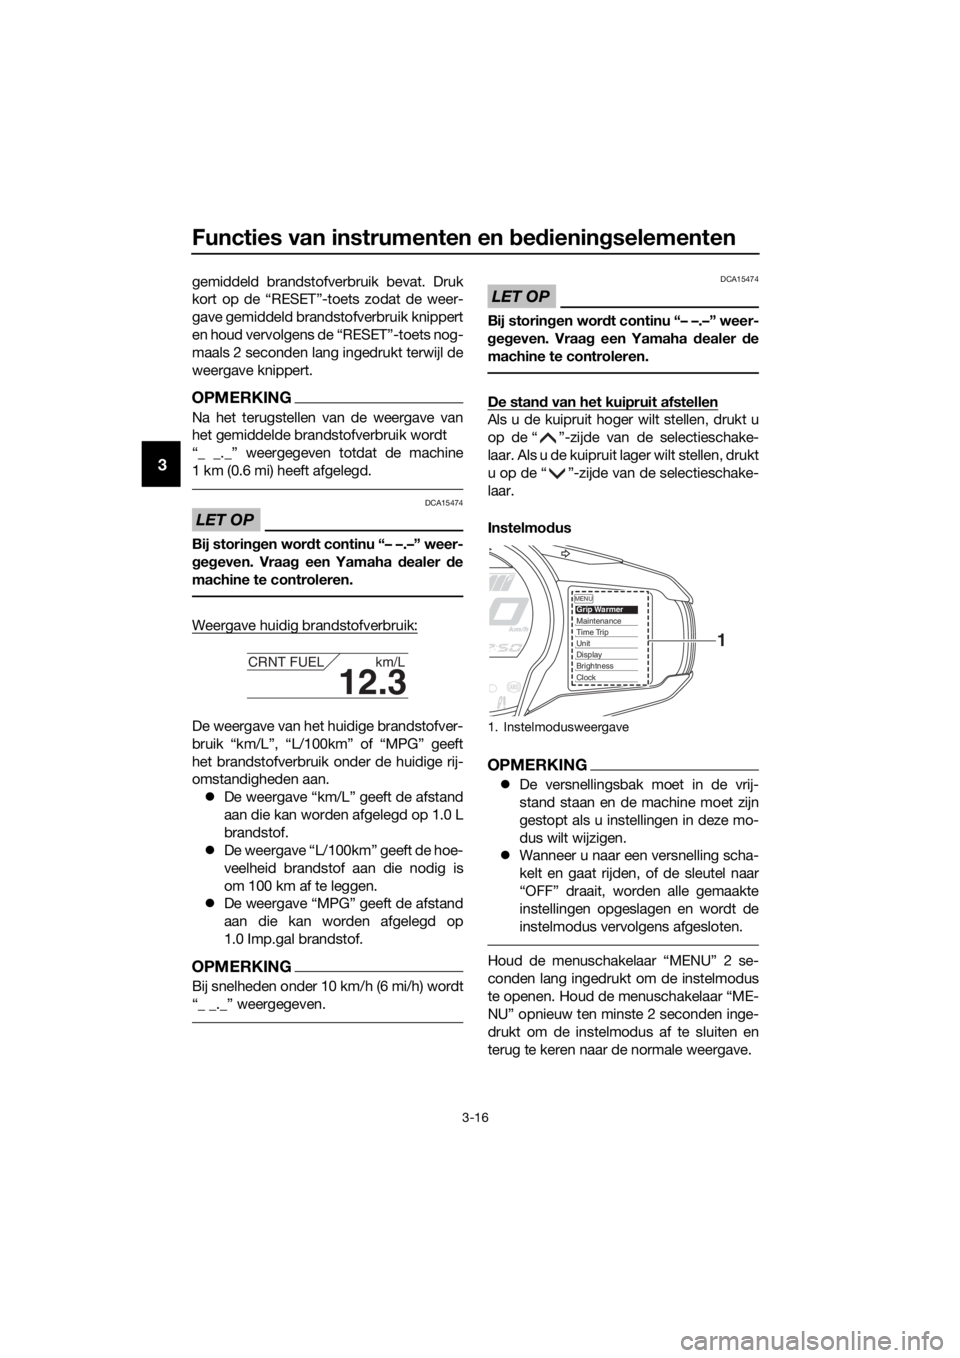 YAMAHA FJR1300AE 2016  Instructieboekje (in Dutch) Functies van instrumenten en bed iening selementen
3-16
3
gemiddeld brandstofverbruik bevat. Druk
kort op de “RESET”-toets zodat de weer-
gave gemiddeld brandstofverbruik knippert
en houd vervolge